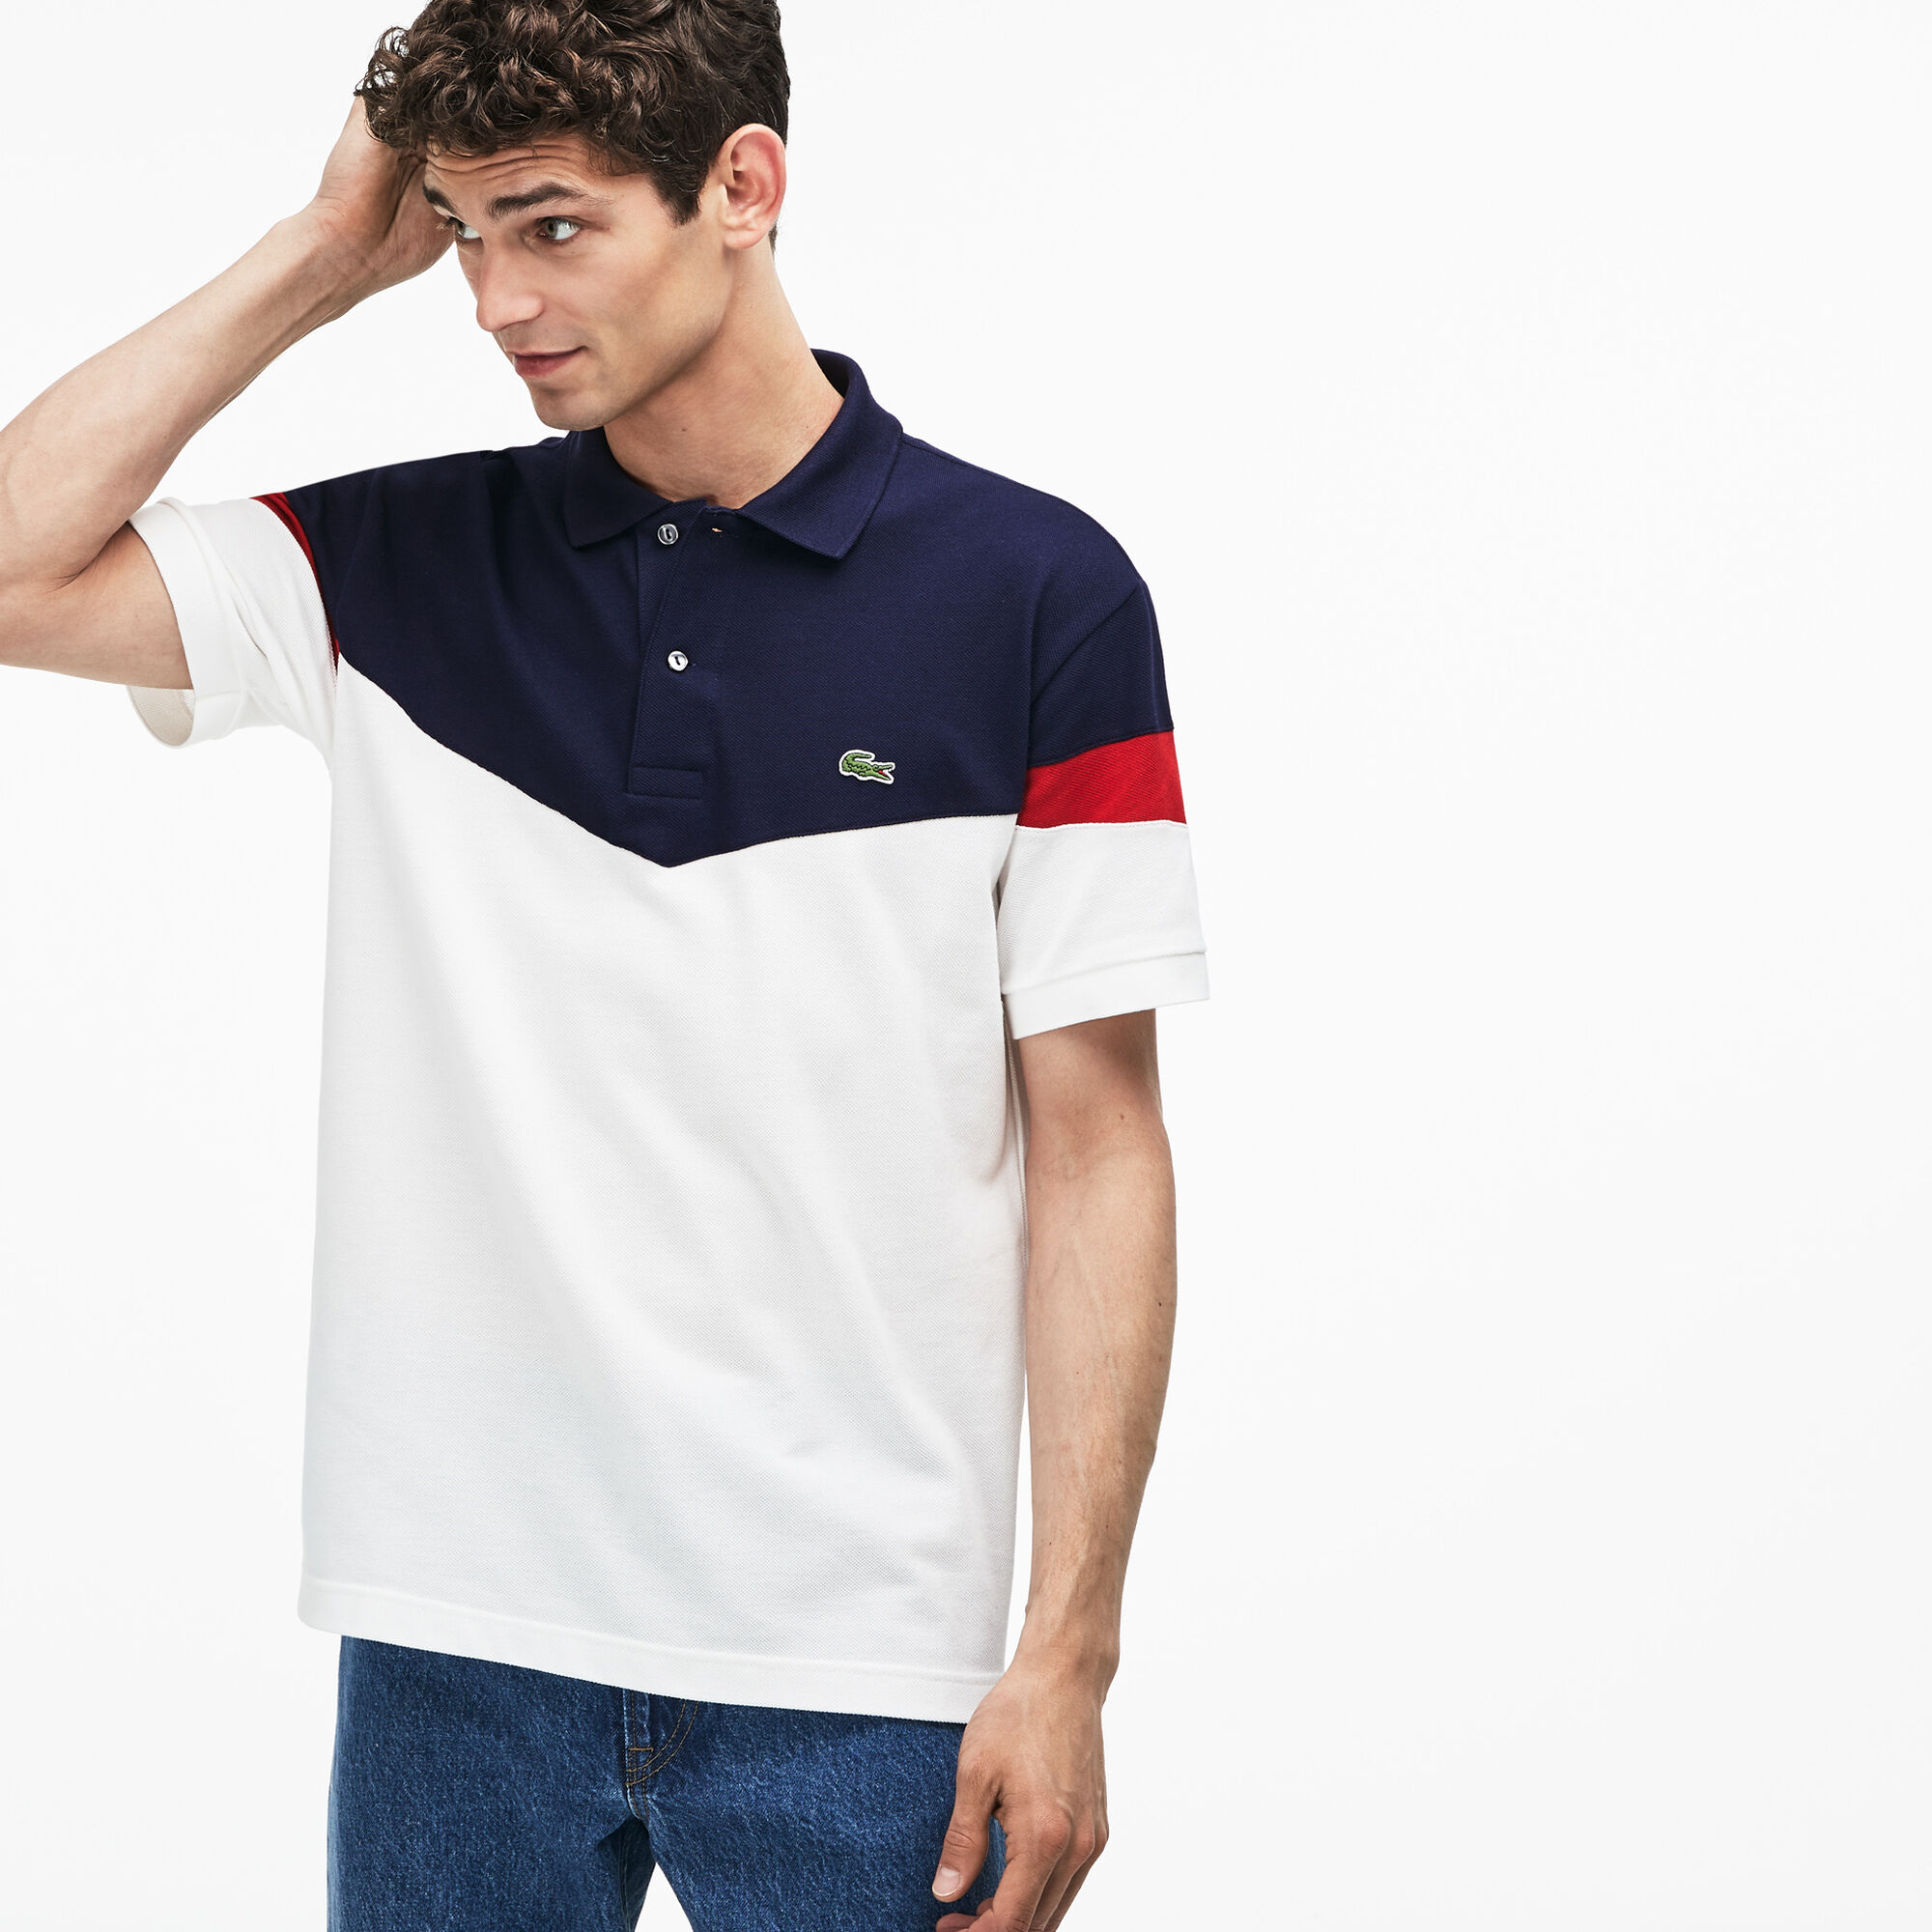 Men's Lacoste Classic Fit Colourblock Cotton Petit Piqué Polo Shirt